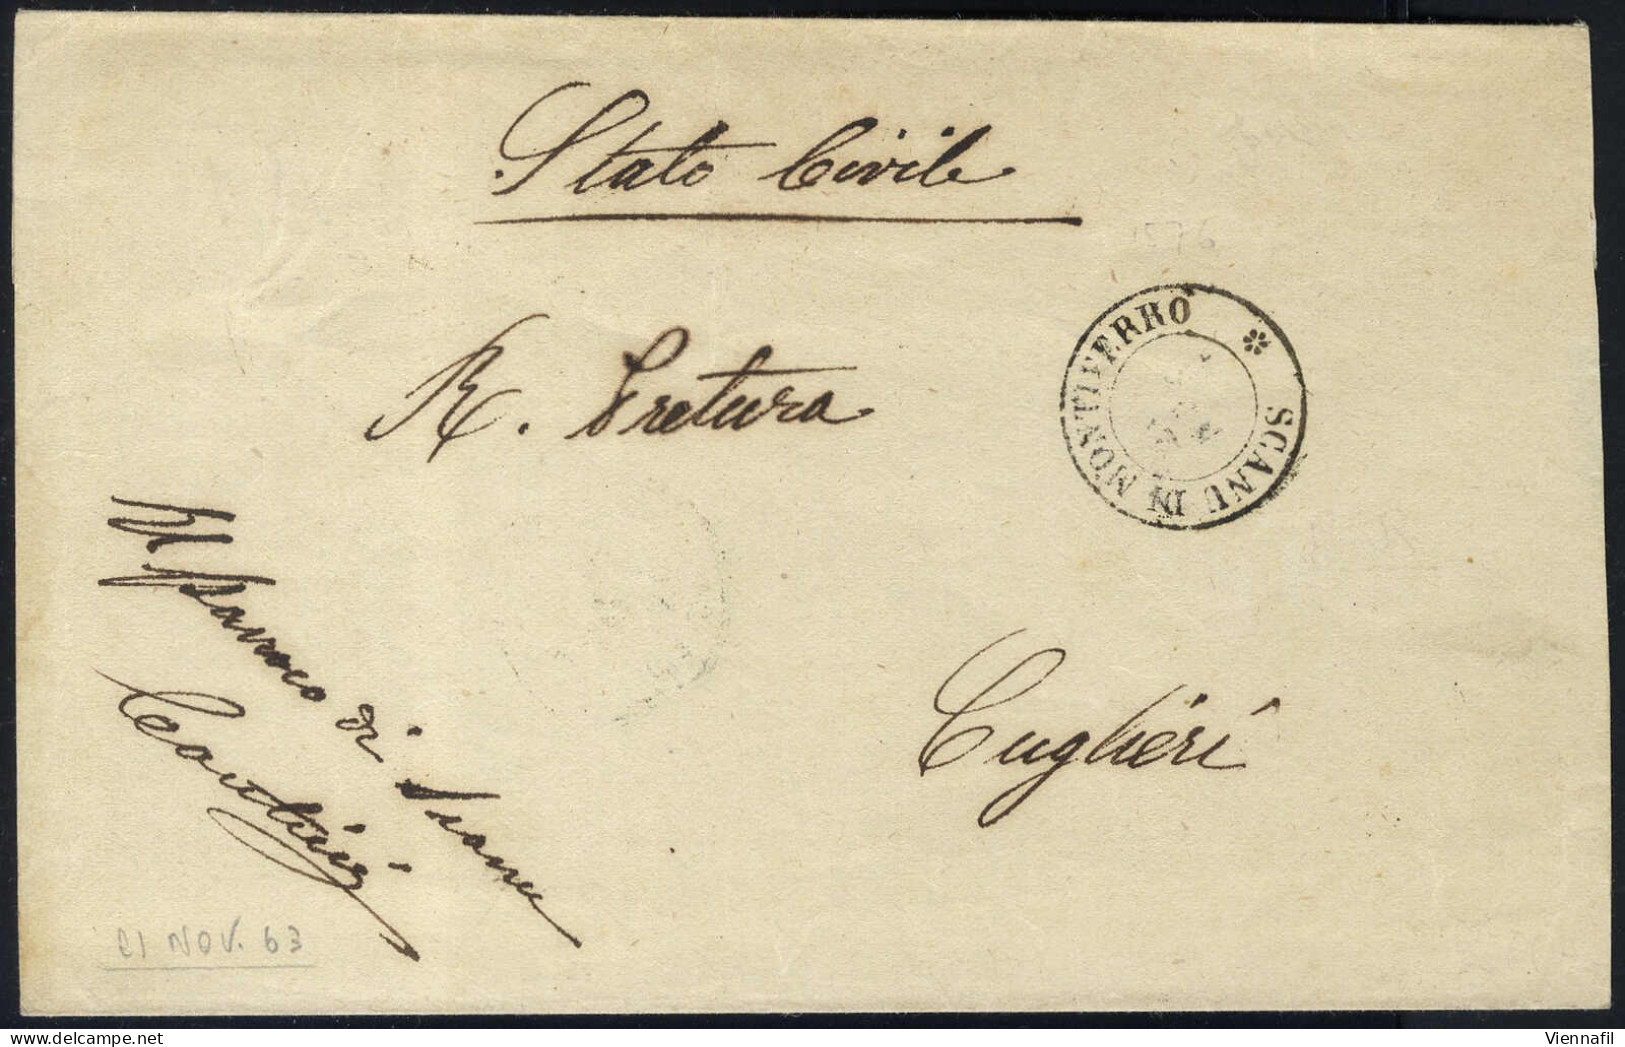 o/piece/cover Sardegna 1850/61 ca., lotto di 10 buste con annullamenti dell' Isola di Sardegna, dieci buste in franchigi